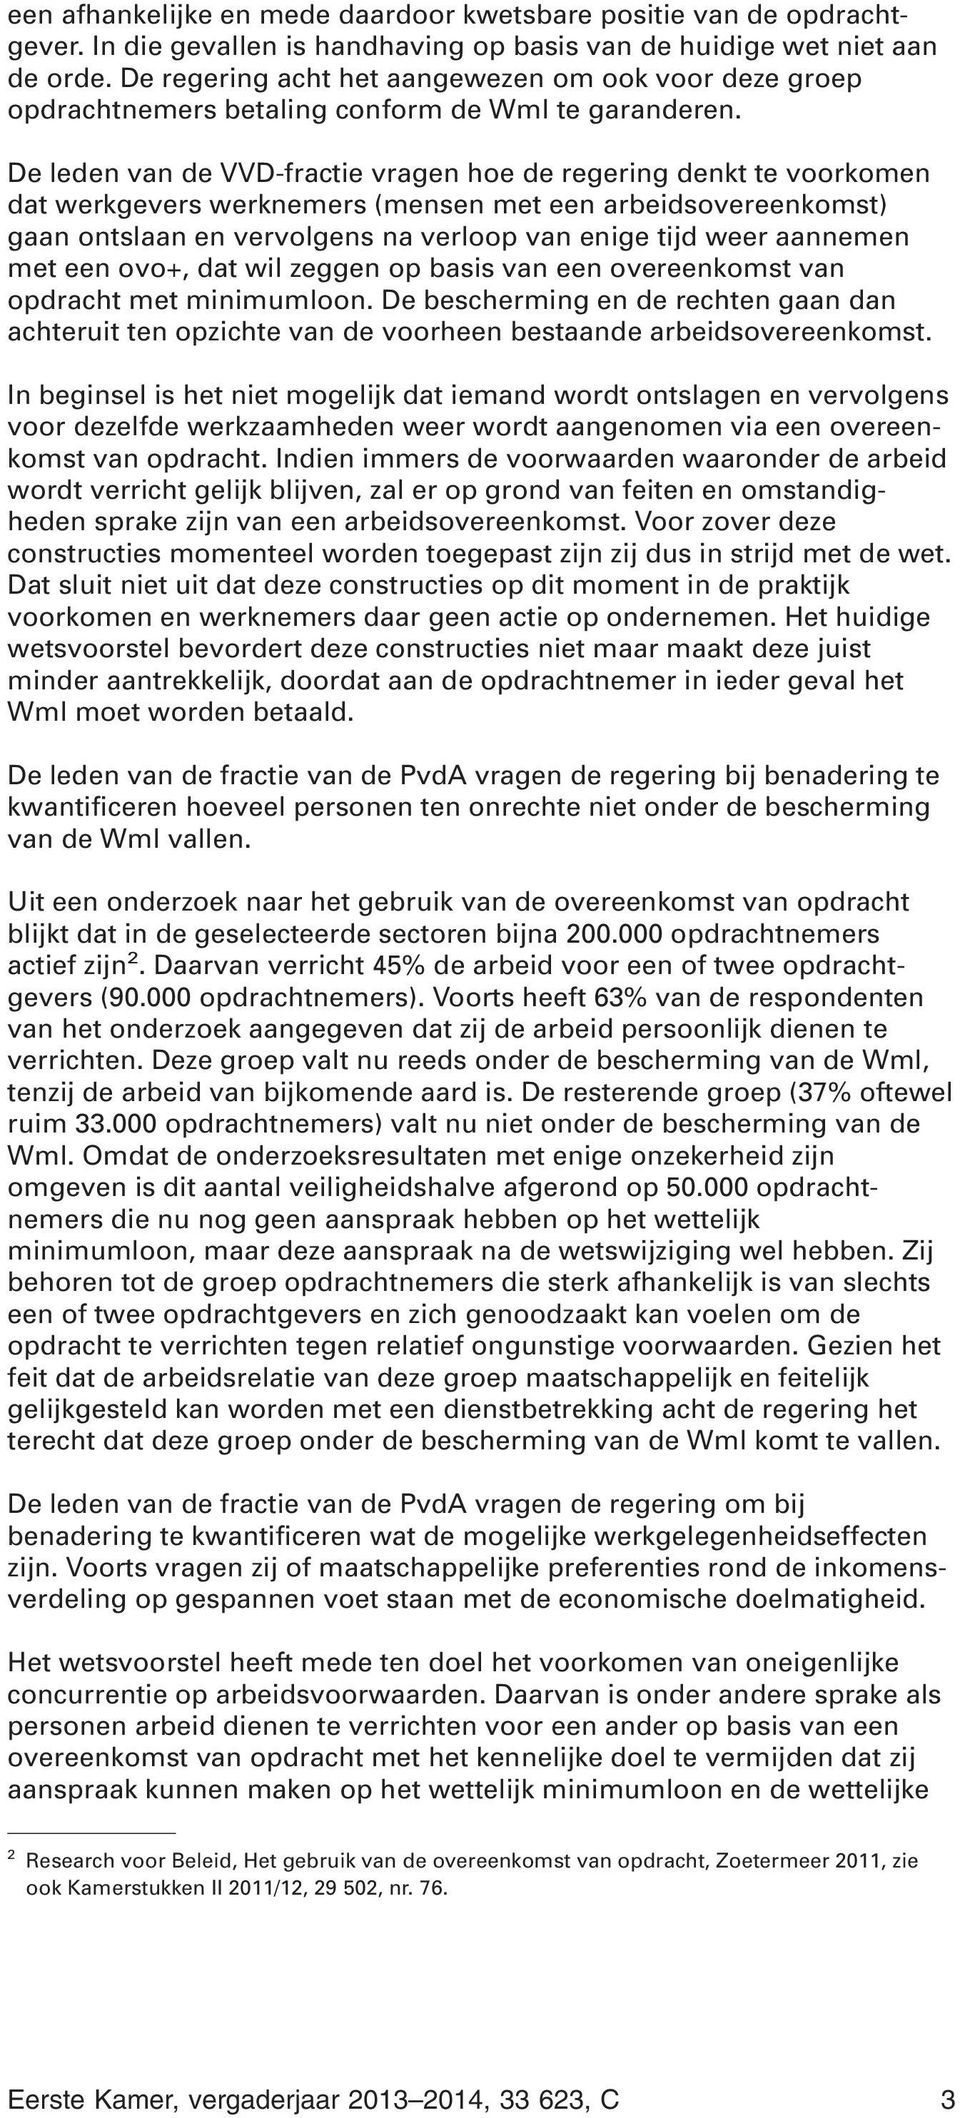 De leden van de VVD-fractie vragen hoe de regering denkt te voorkomen dat werkgevers werknemers (mensen met een arbeidsovereenkomst) gaan ontslaan en vervolgens na verloop van enige tijd weer